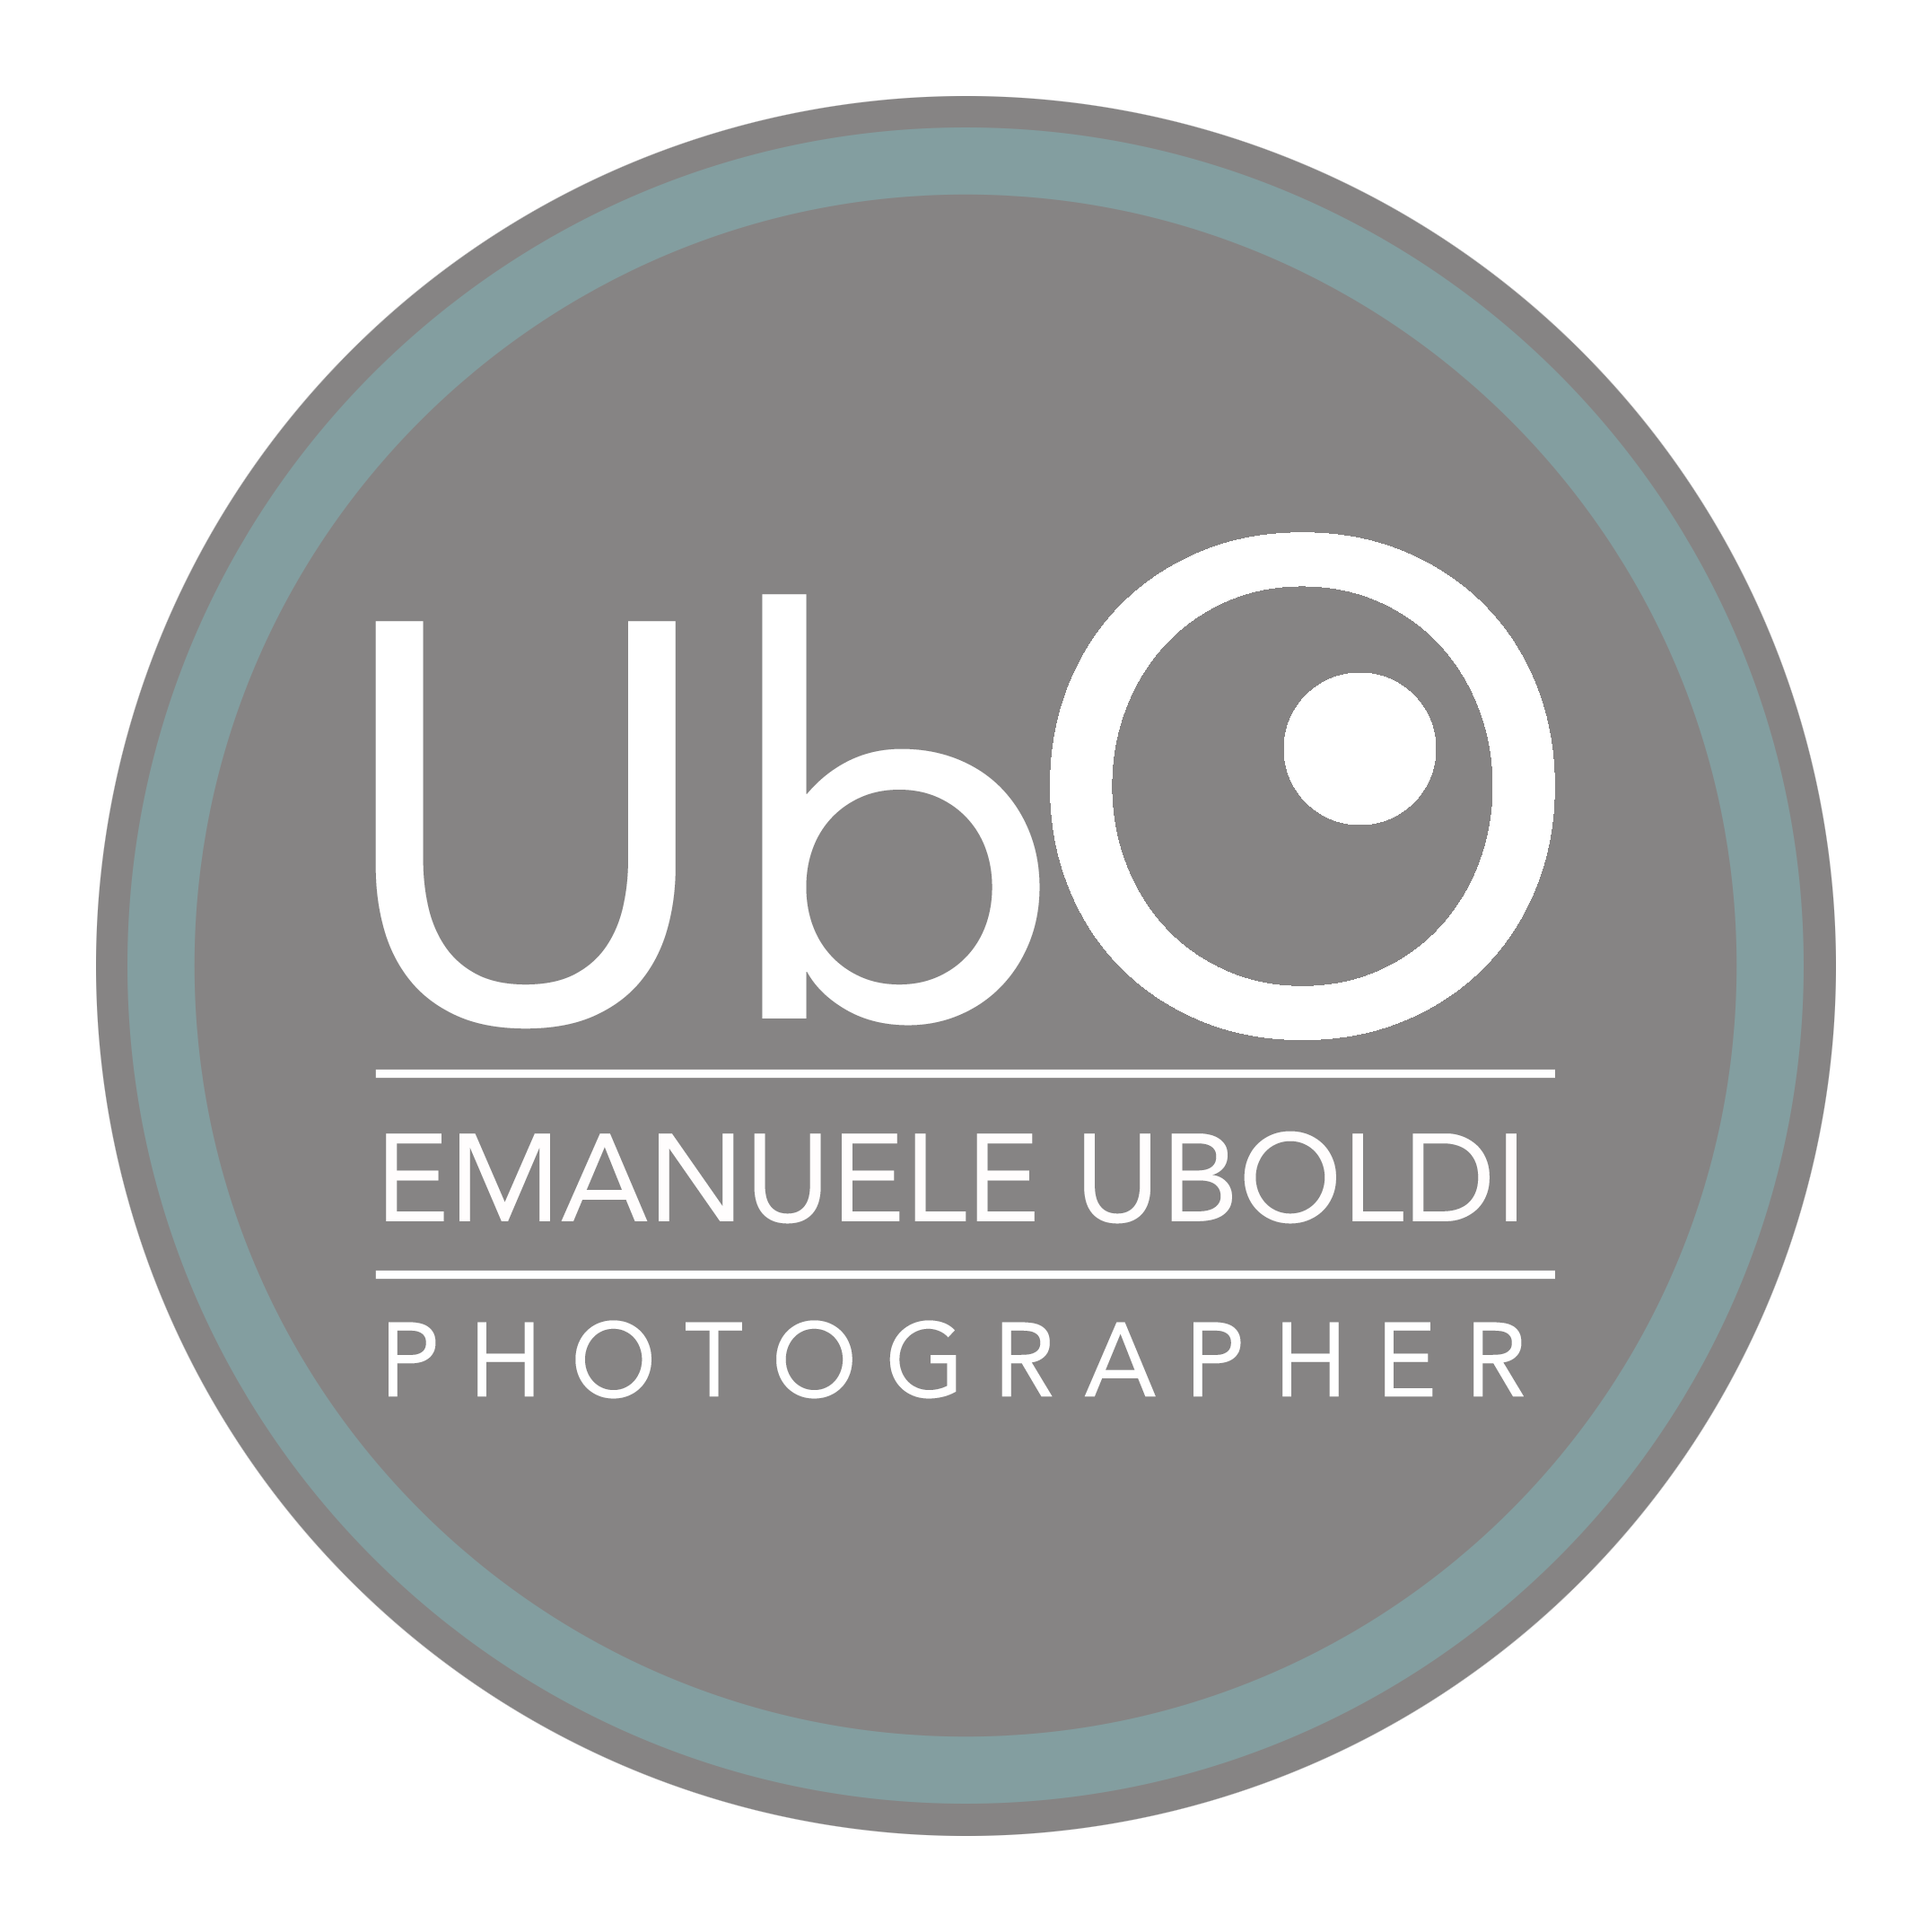 Commercial - Emanuele Uboldi Studio Ubo Photographer